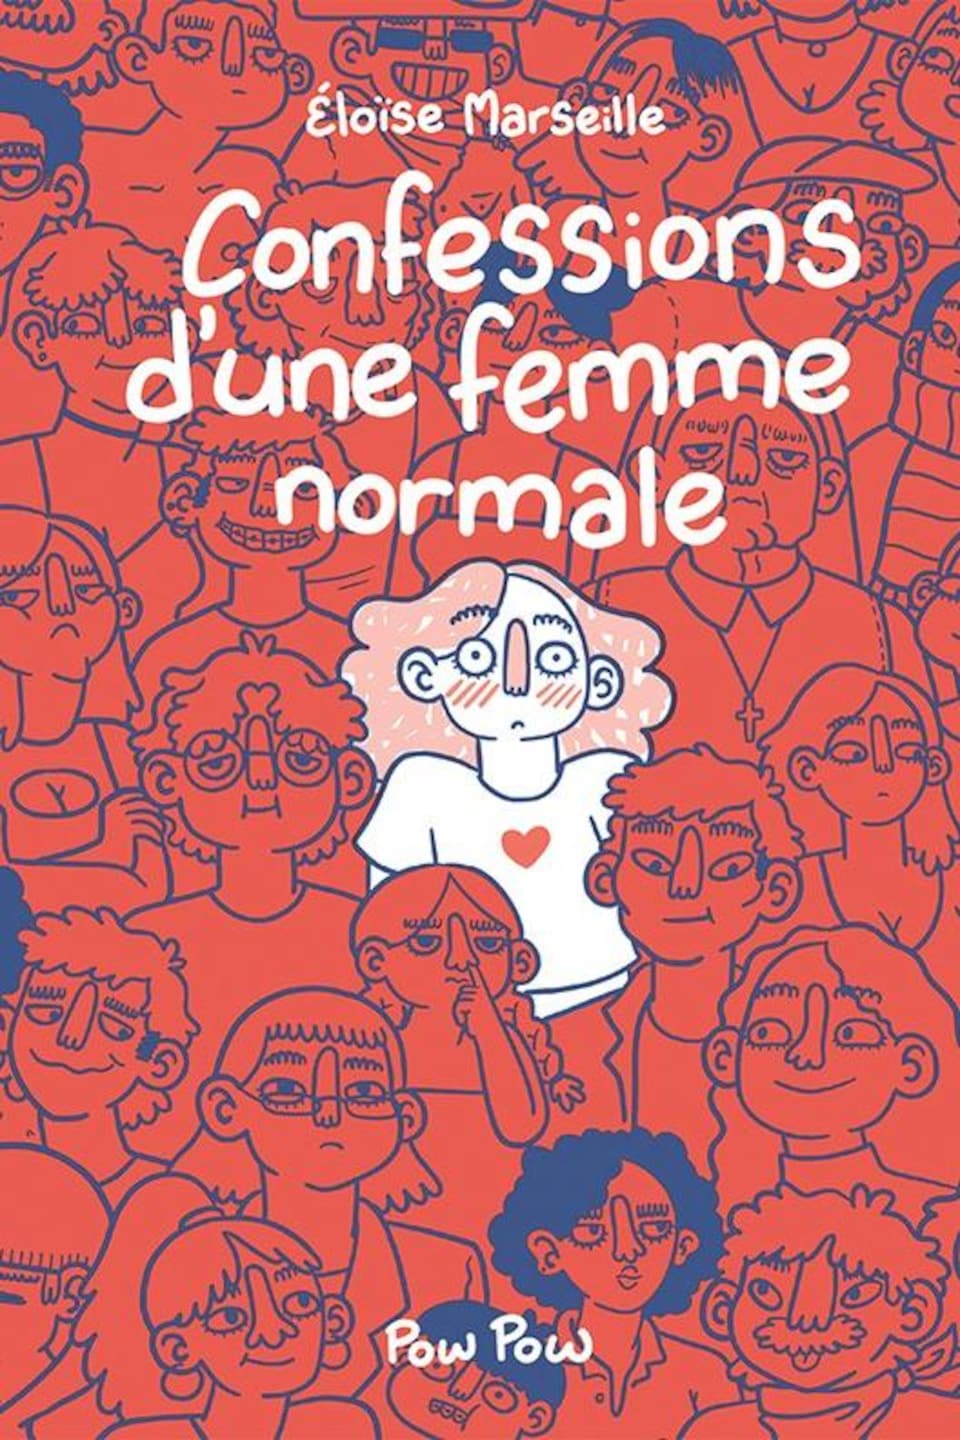 La couverture du livre Confessions d'une femme normale d'Éloise Marseille.